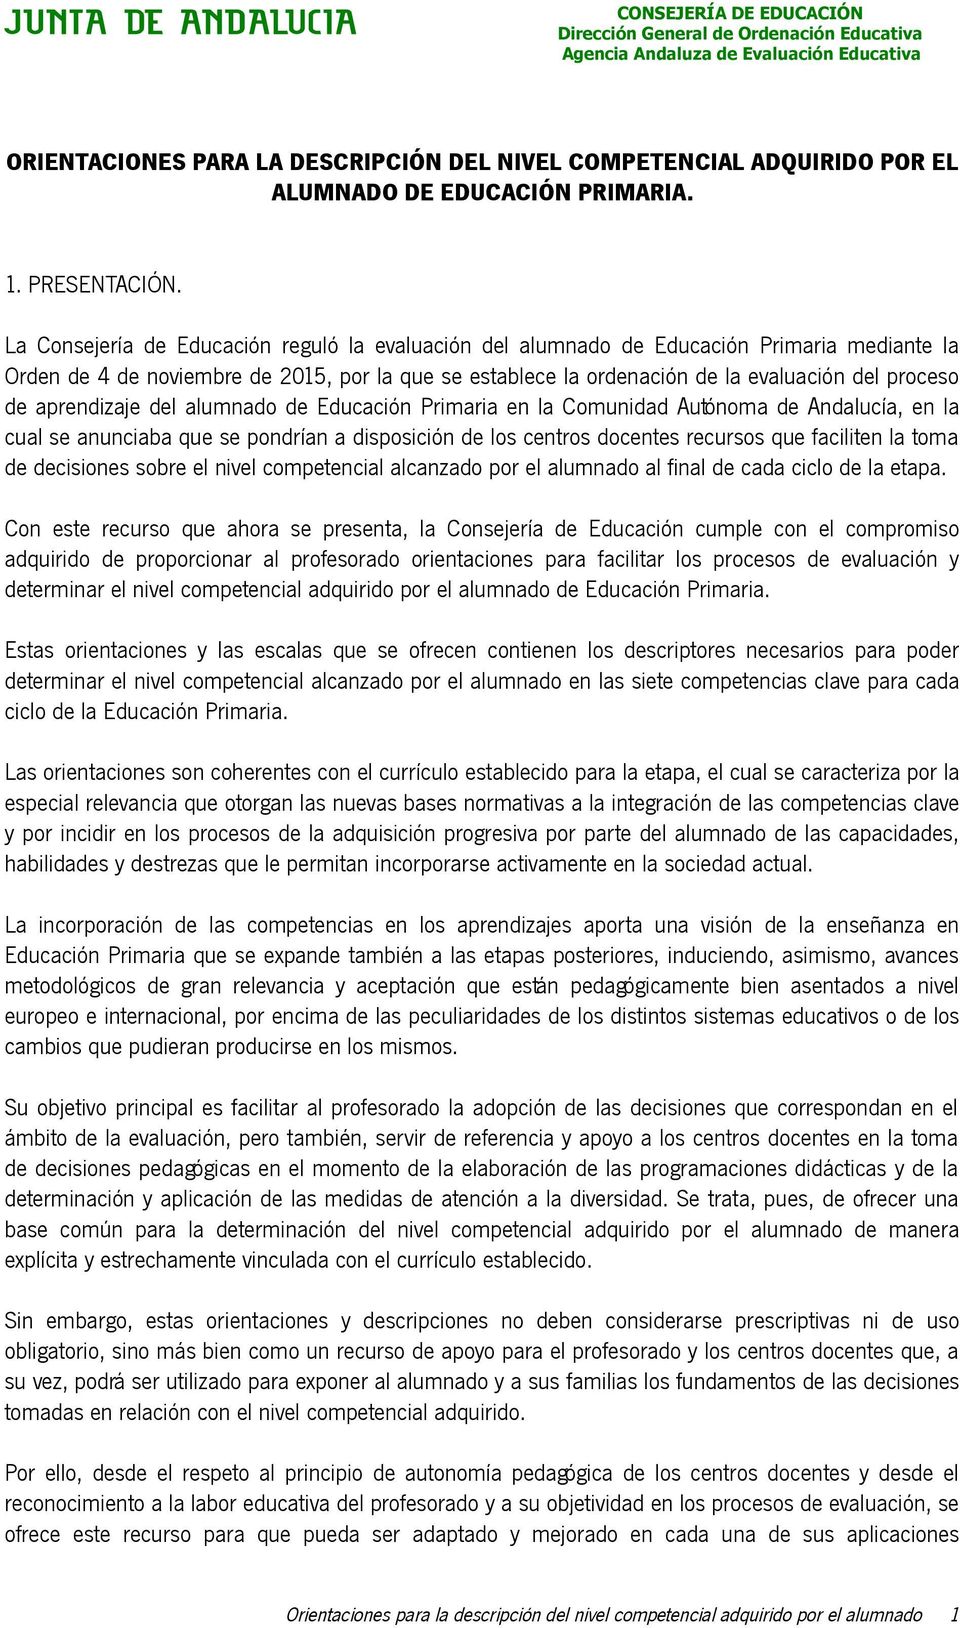 aprendizaje del alumnado de Educación Primaria en la Comunidad Autónoma de Andalucía, en la cual se anunciaba que se pondrían a disposición de los centros docentes recursos que faciliten la toma de